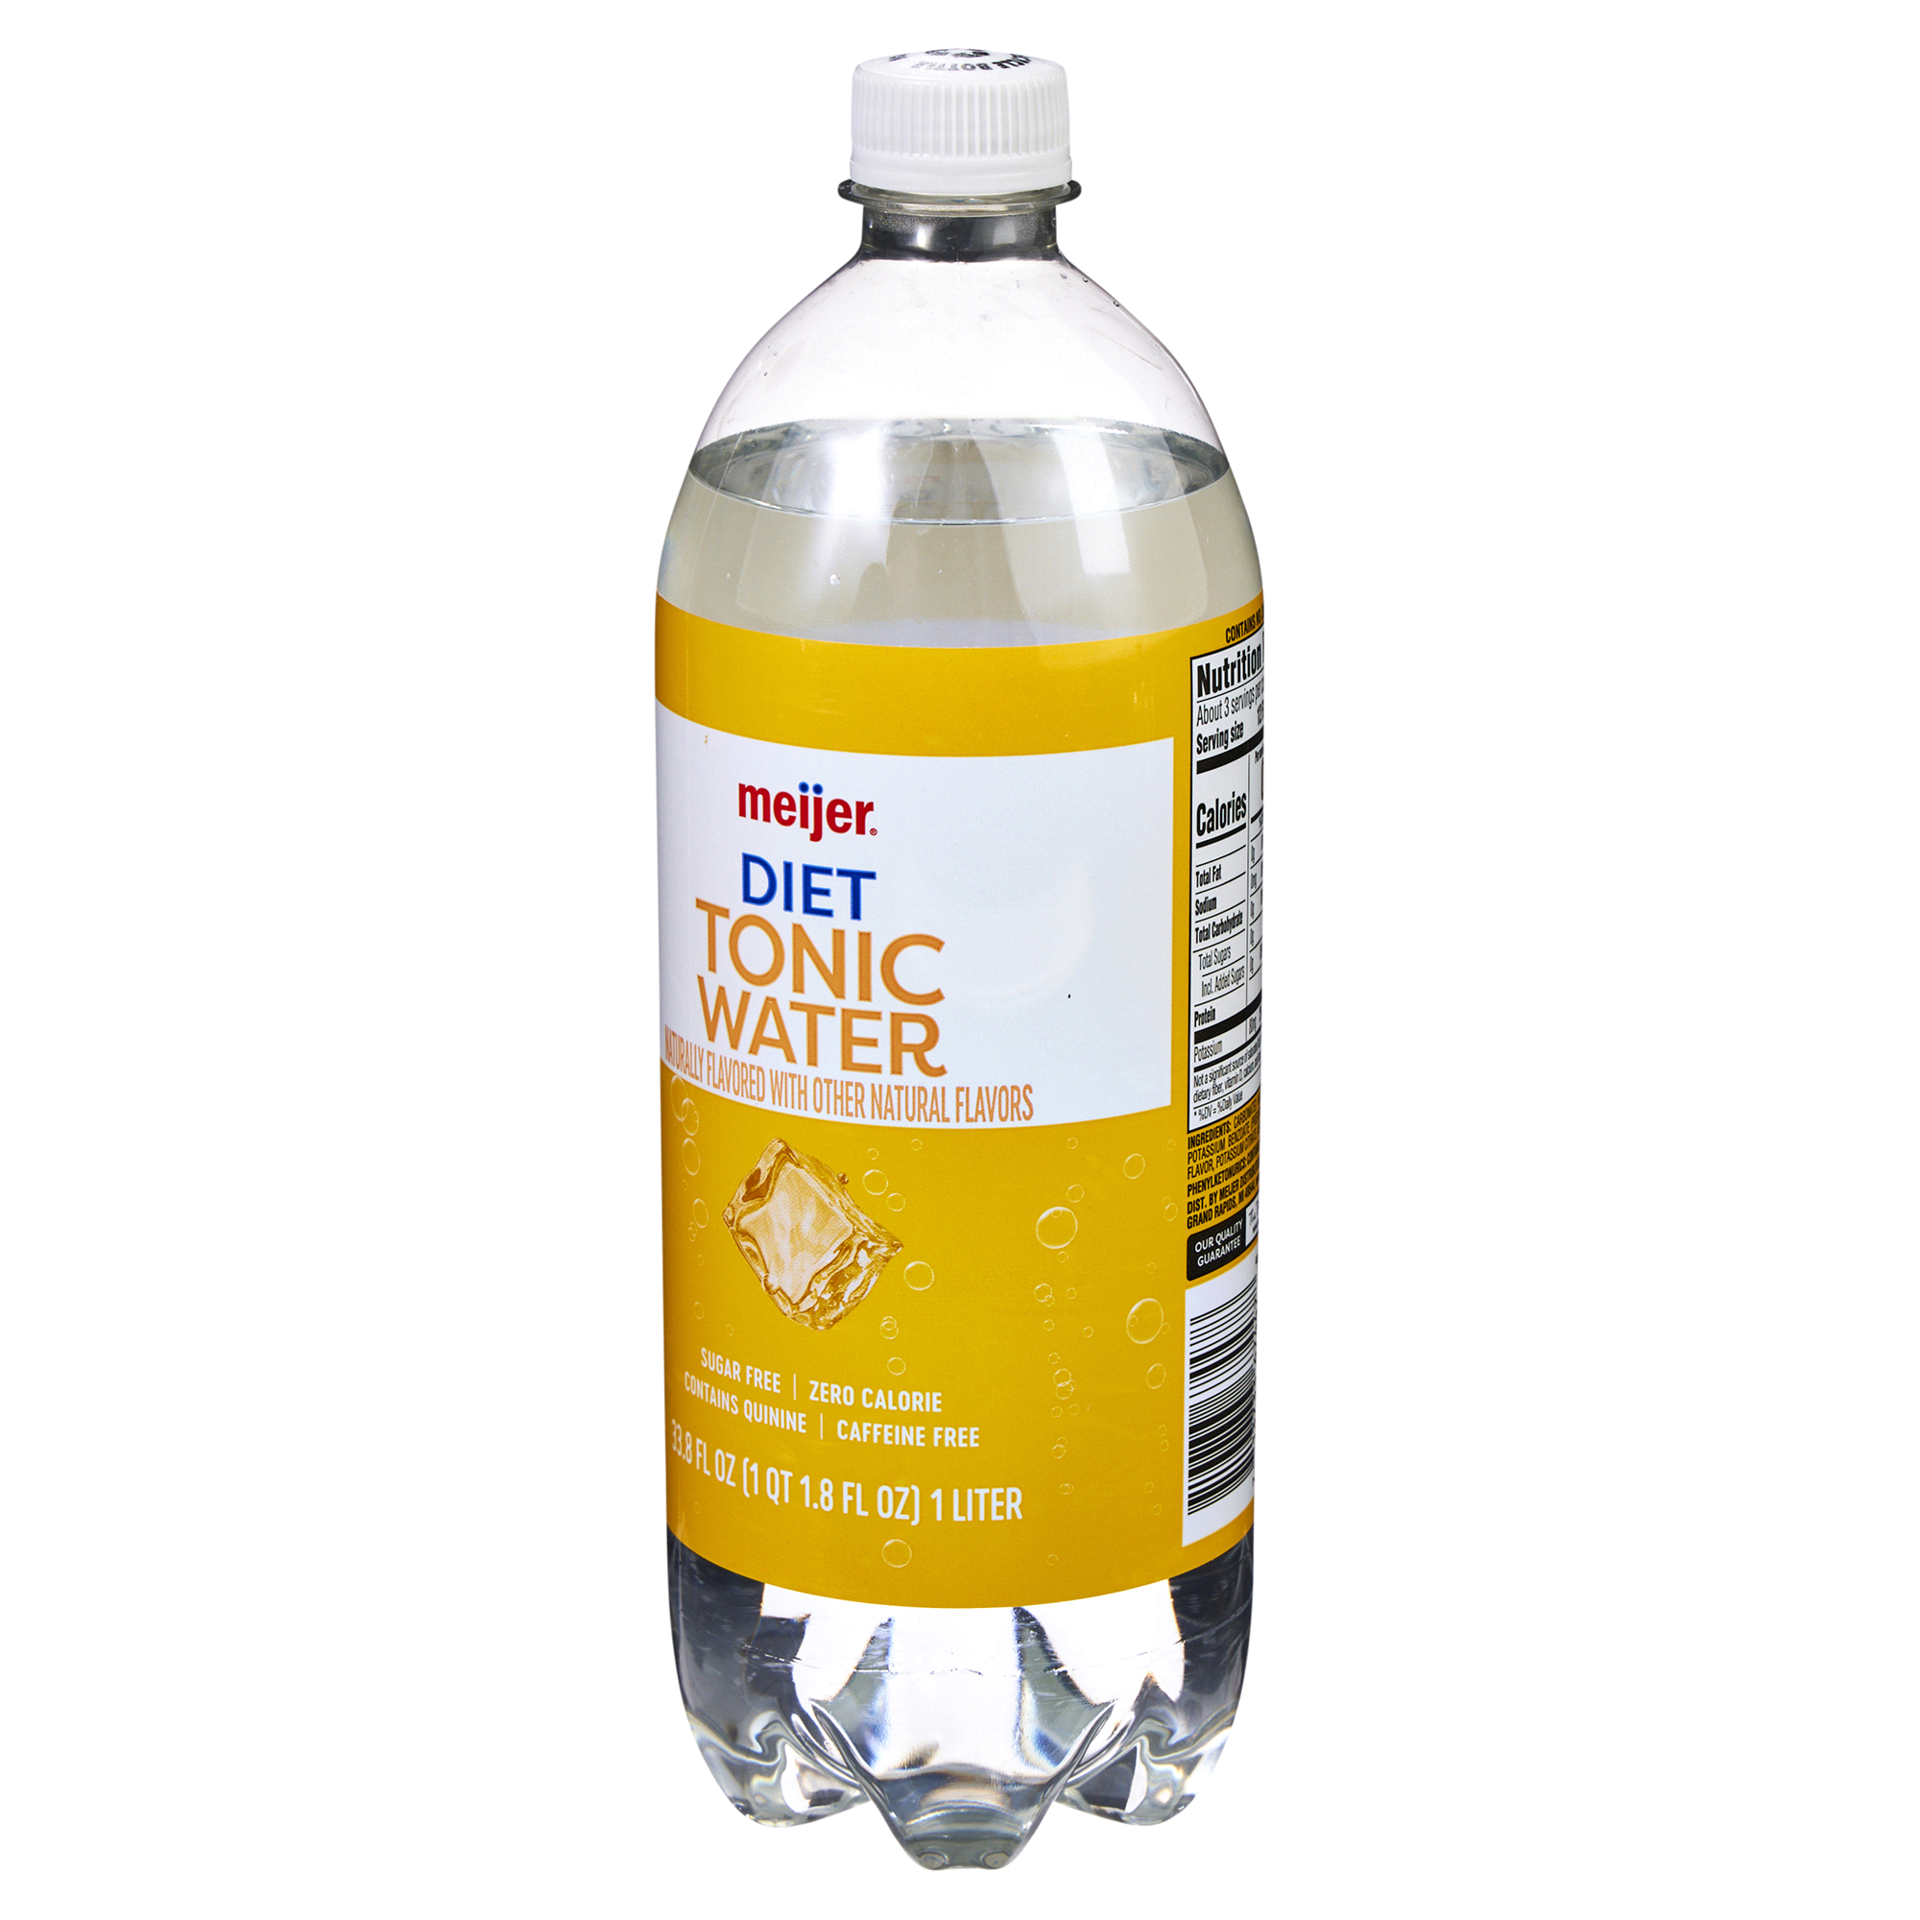 slide 9 of 29, Meijer Diet Tonic Water, 1 liter